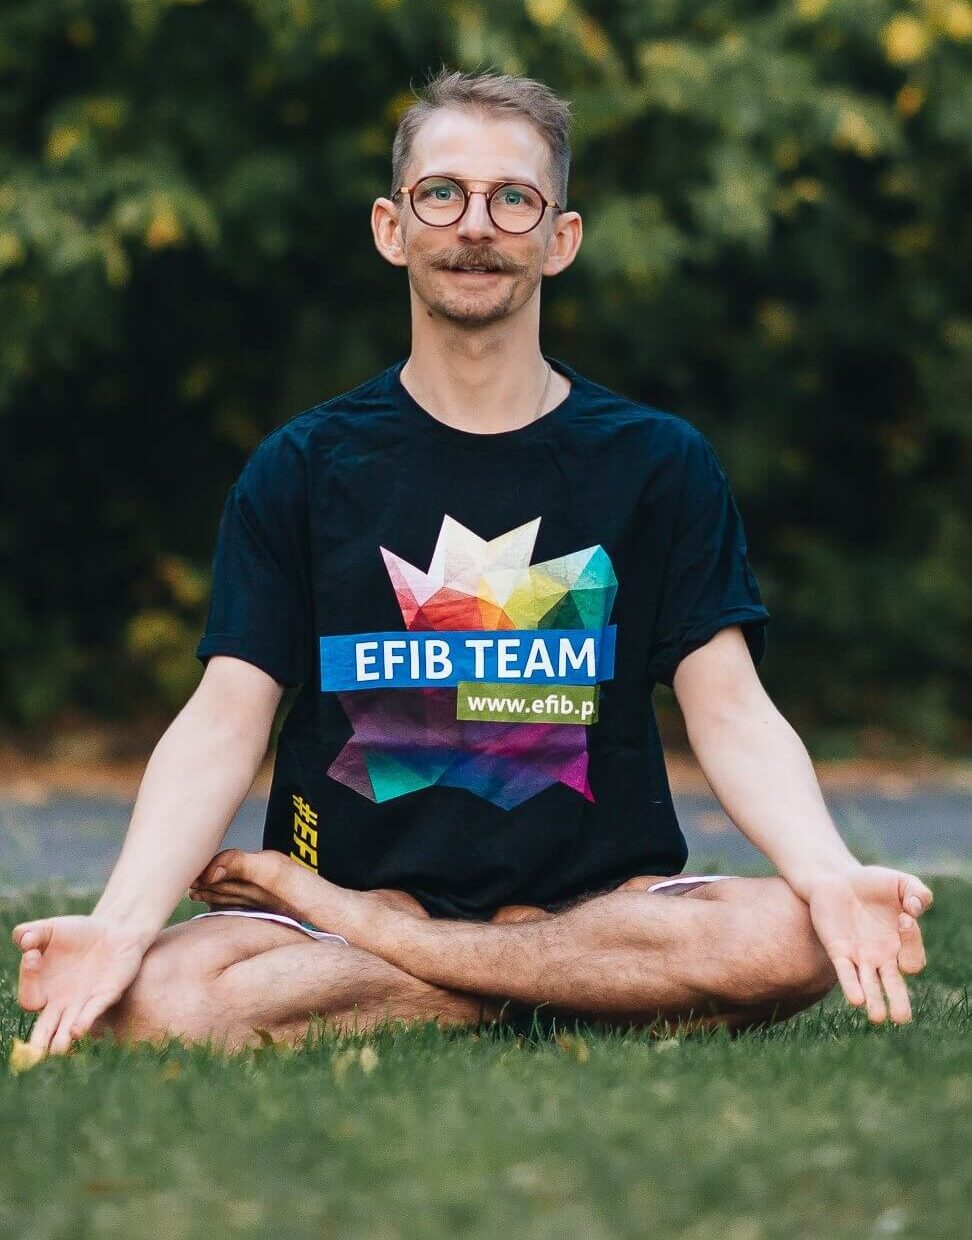 Trener w koszulce z logo efib, nauczyciel jogi w asanie siedzi na łące.